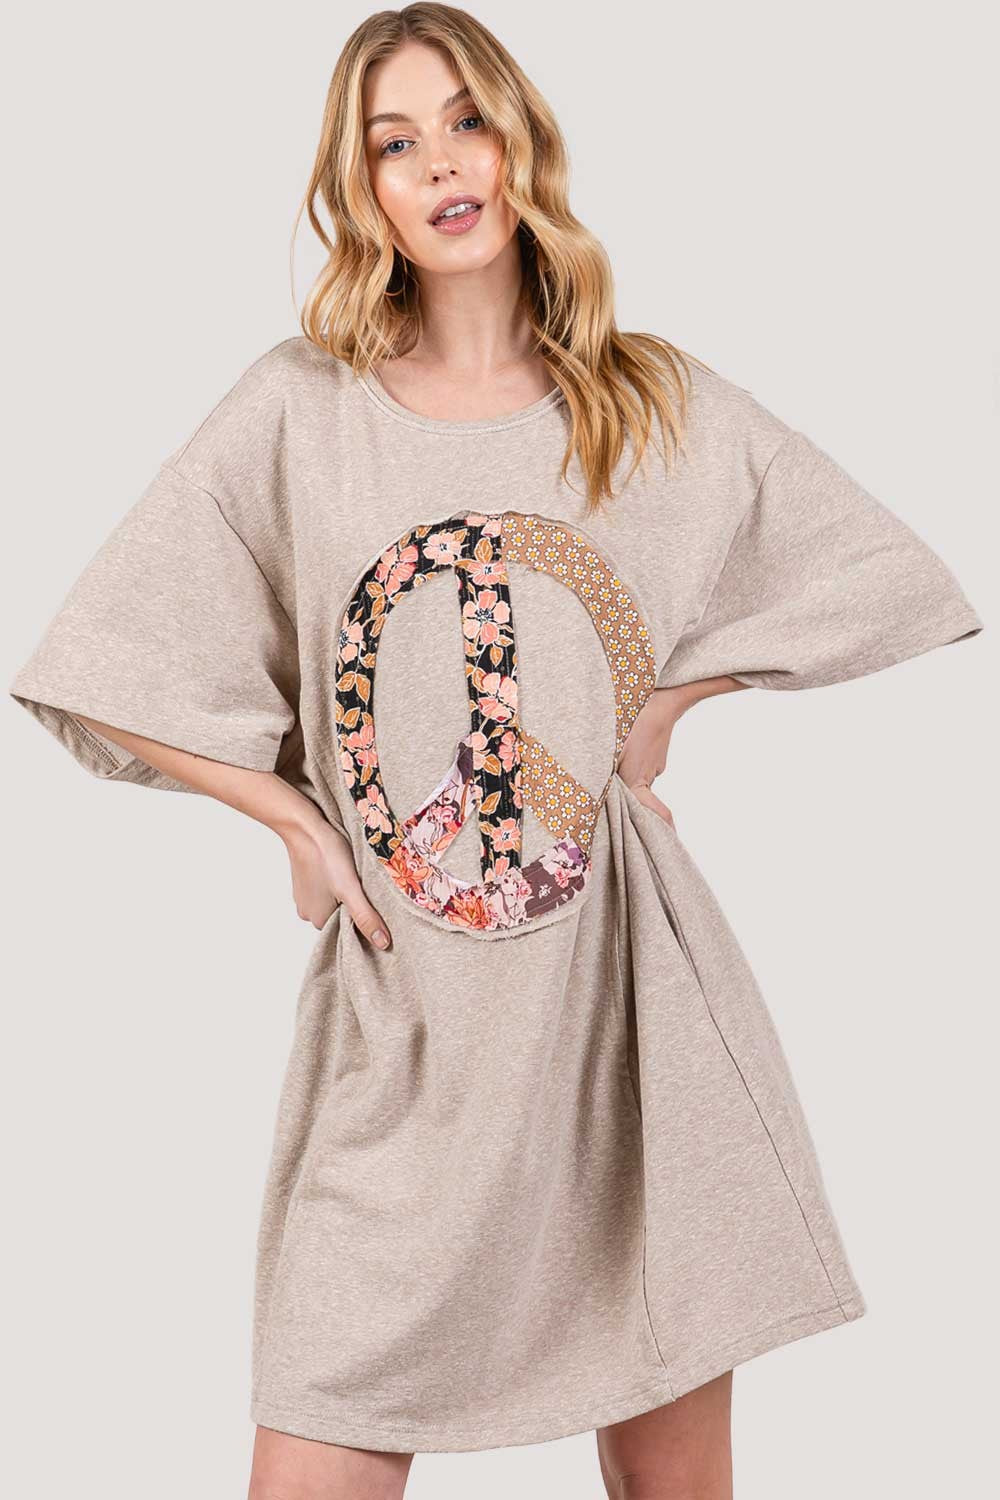 Peace Sign Applique Short Sleeve Tee Dress | Shirt Dress Women